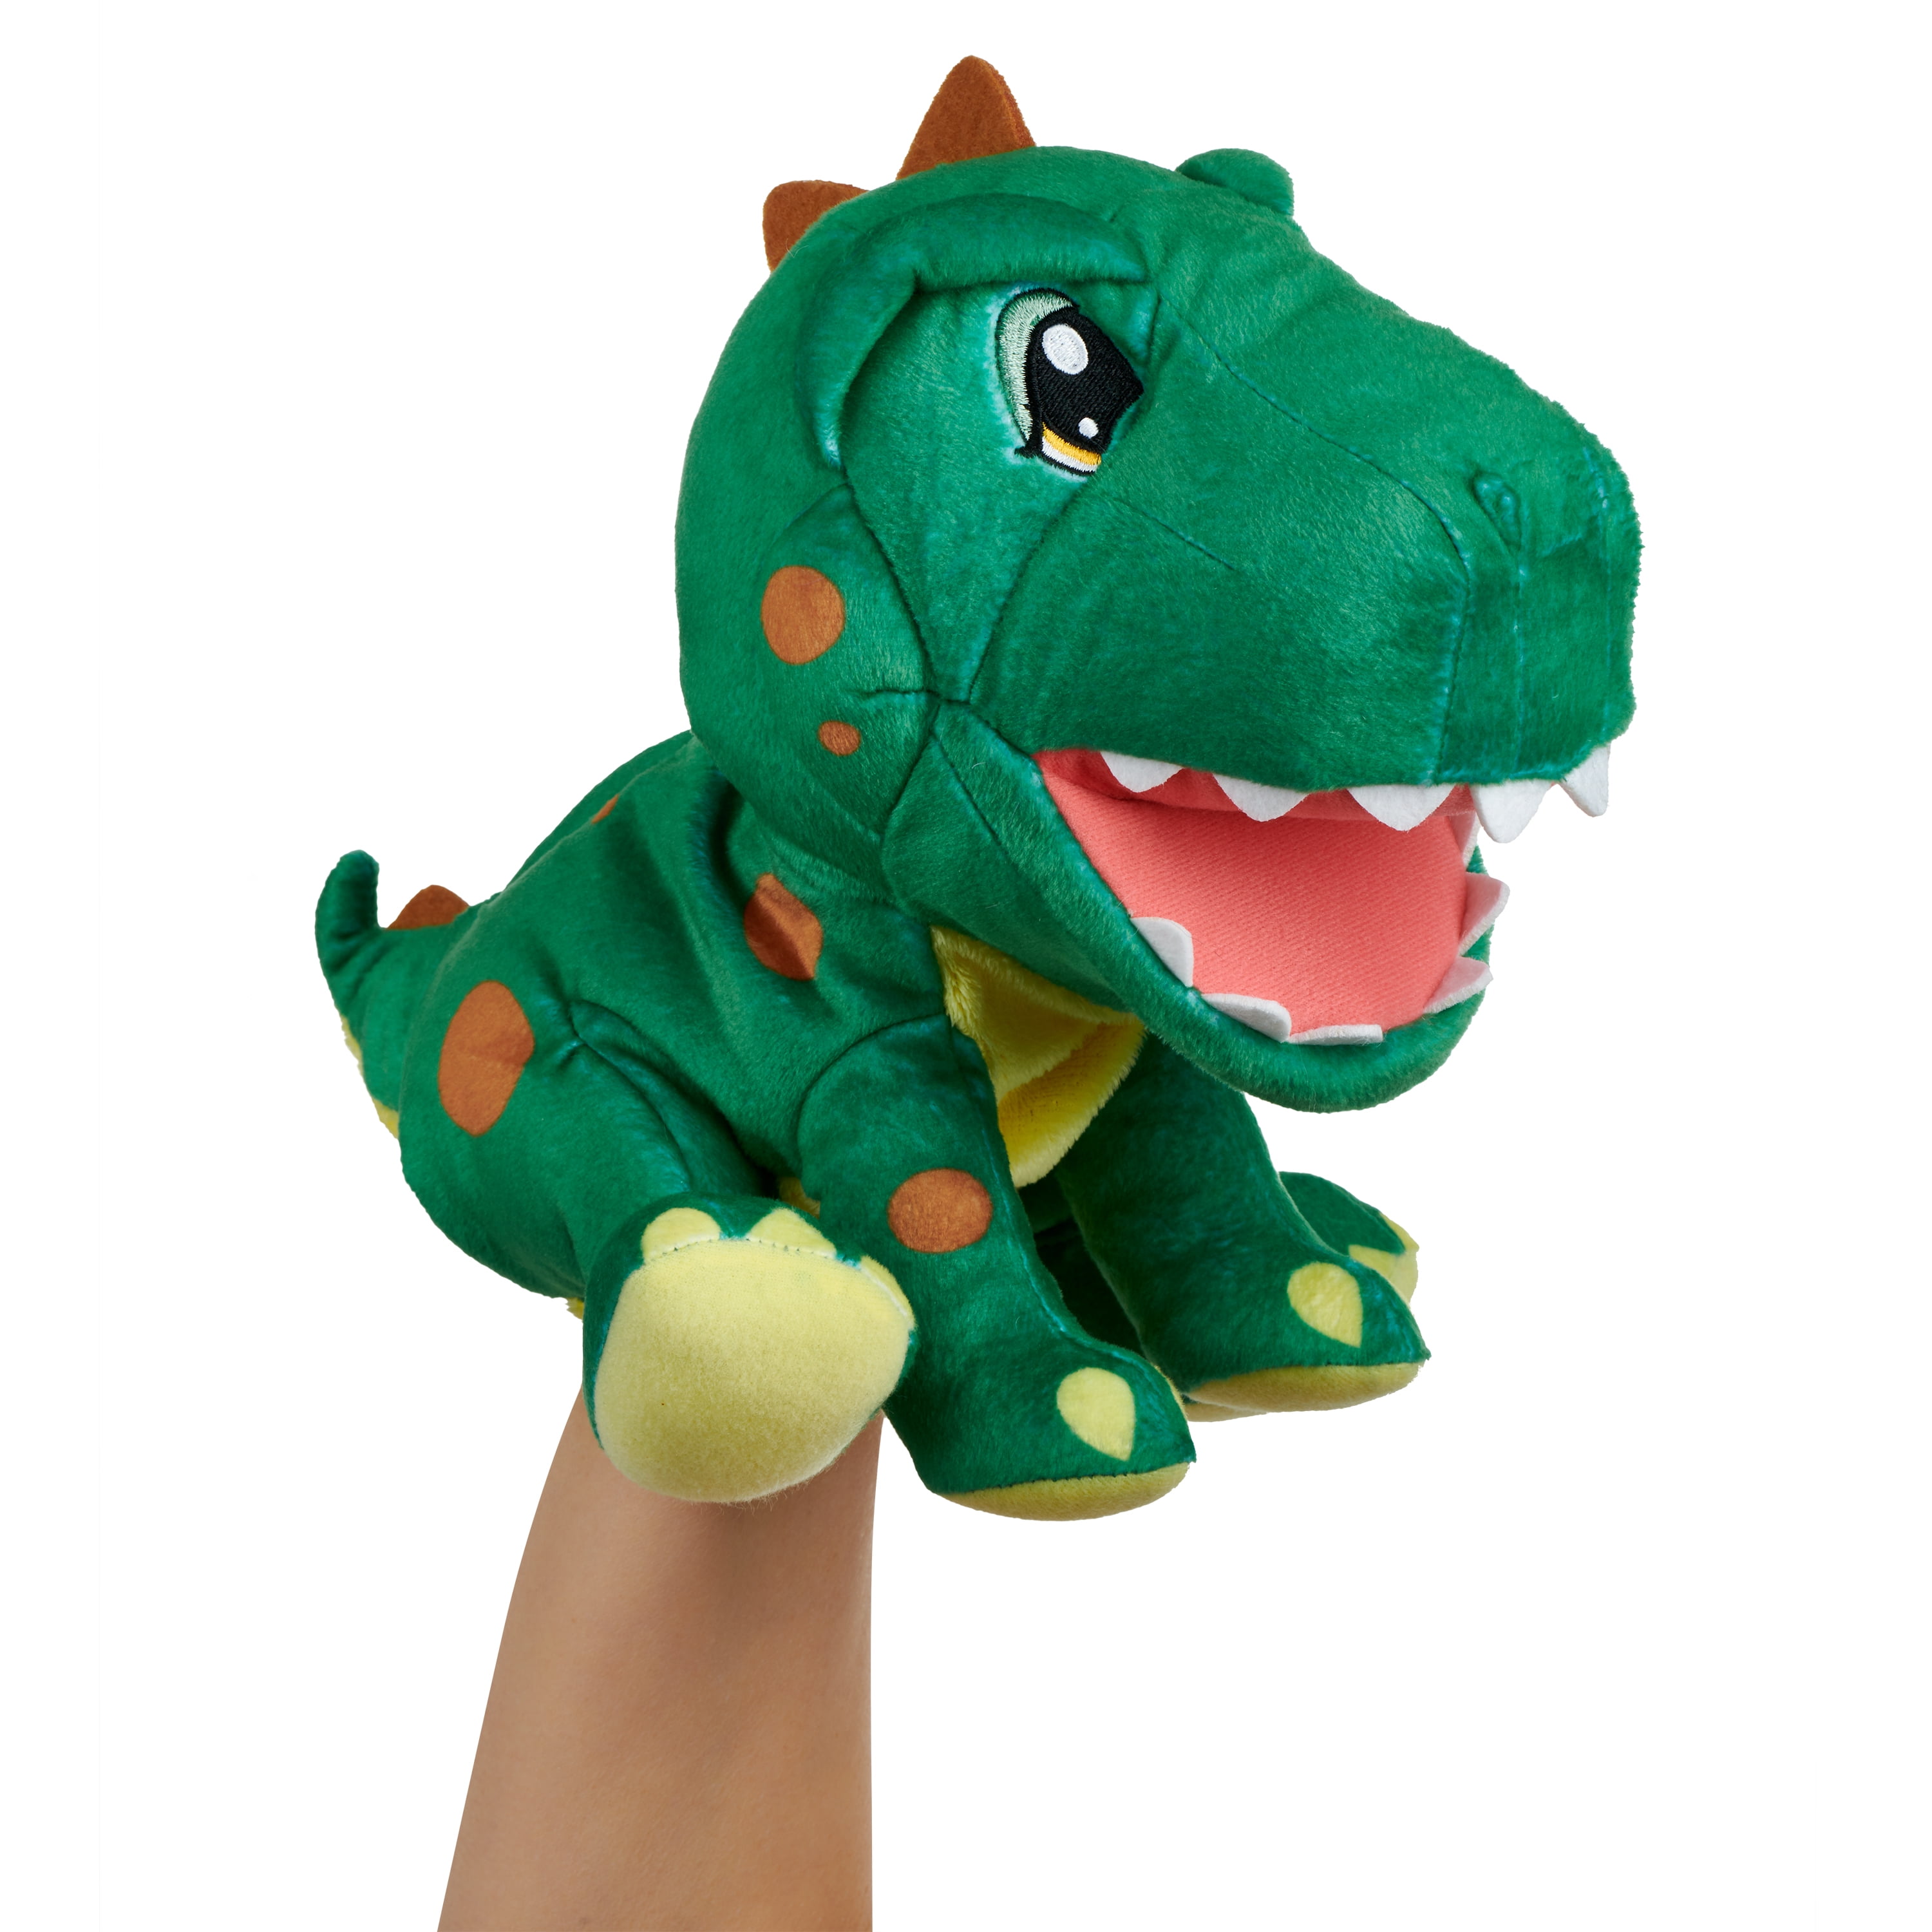 Руки динозавриком. Мягкая интерактивная игрушка Дино. WOWWEE динозавр. Мягкая интерактивная игрушка WOWWEE. Динозавр на руку игрушка.